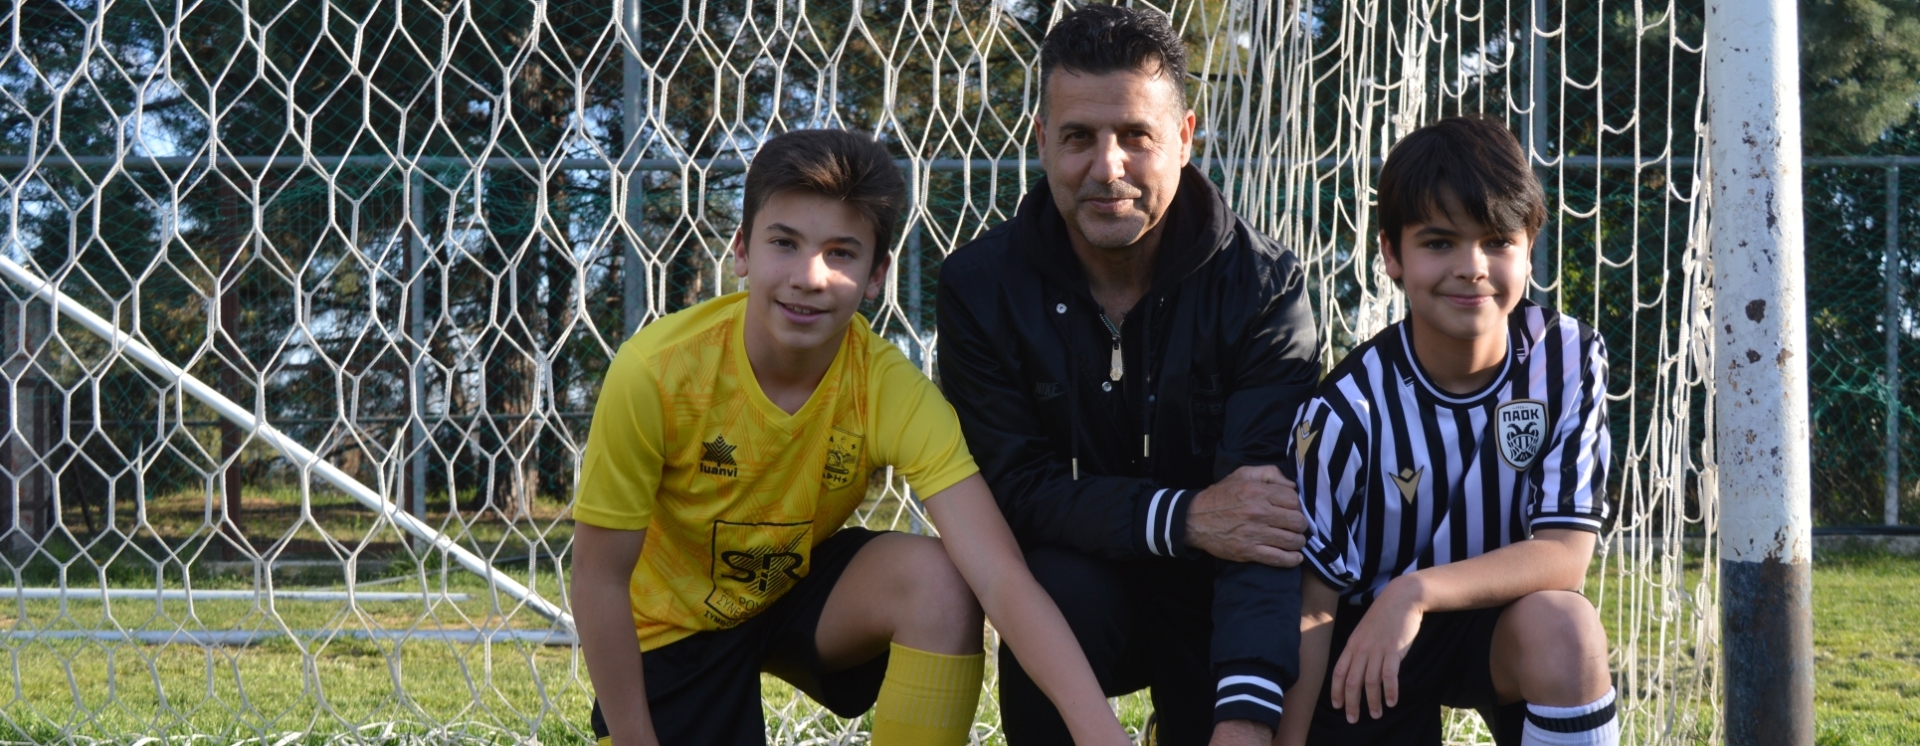 Οι γιοι του Μαρτσέλο παίζουν σε ΠΑΟΚ και Αρη: «Είμαι με την ισοπαλία»